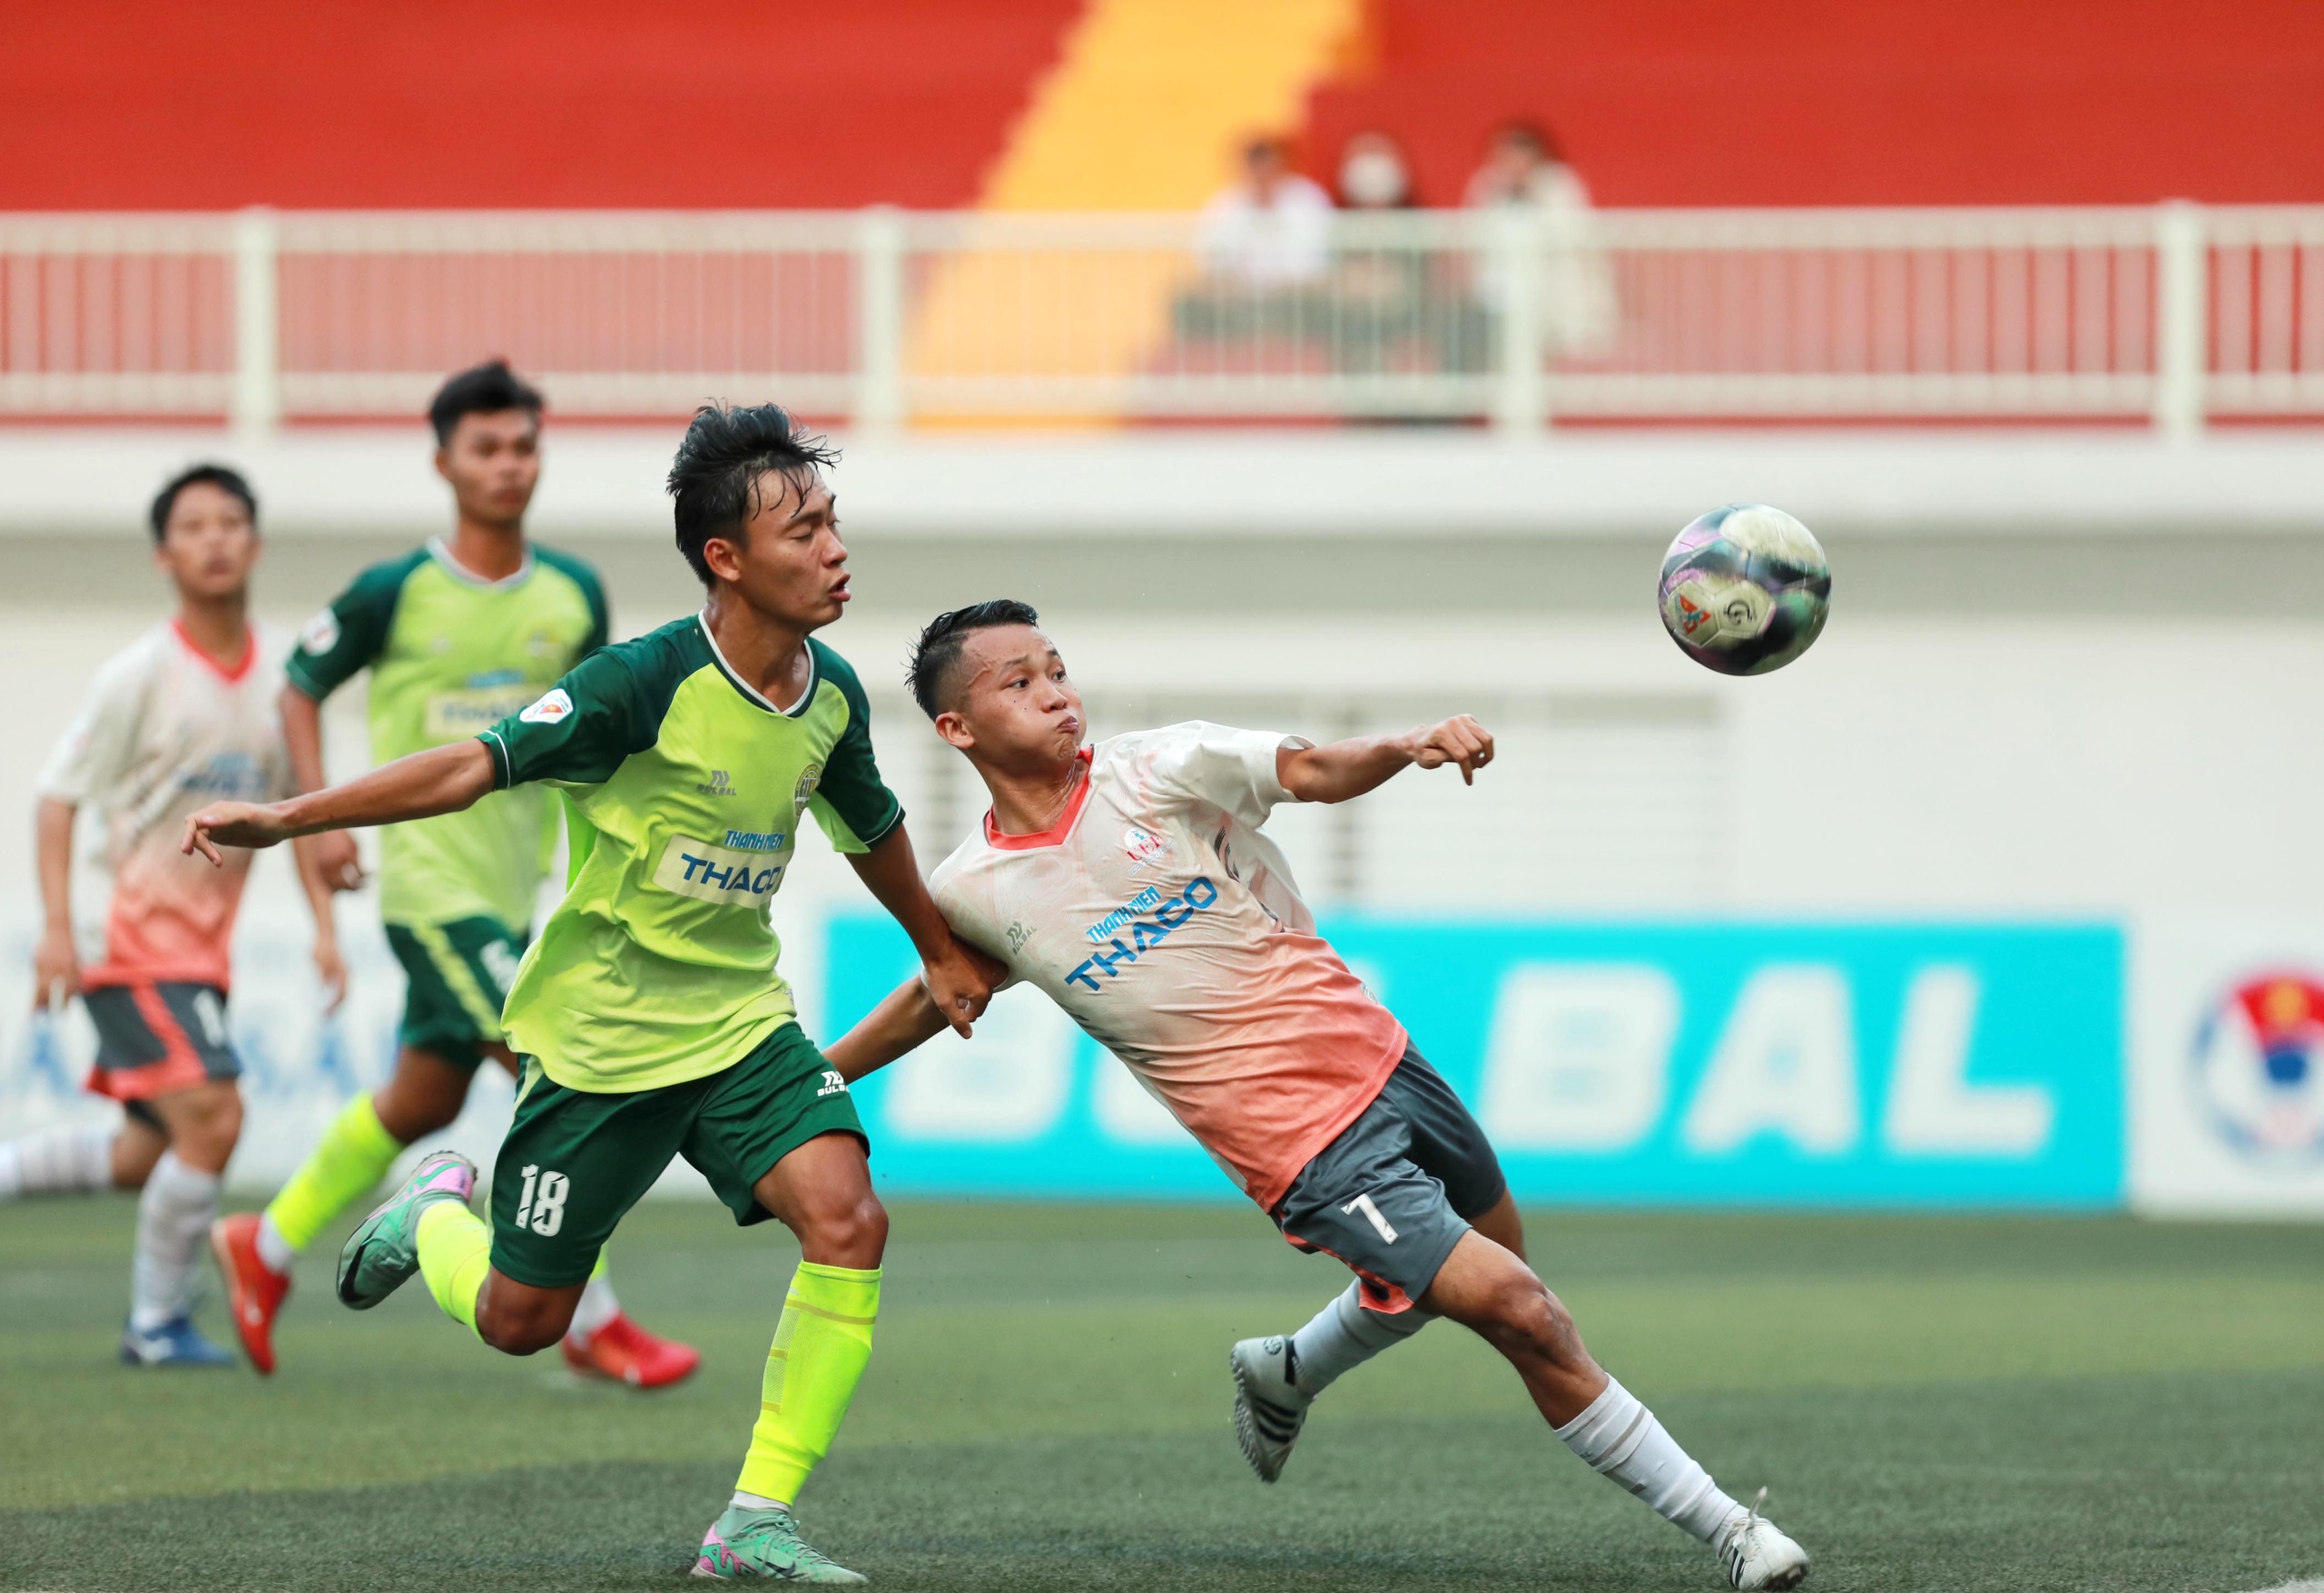 Sân bóng Trường ĐH Tôn Đức Thắng sẽ lại nóng với lượt trận play-off khu vực TP.HCM